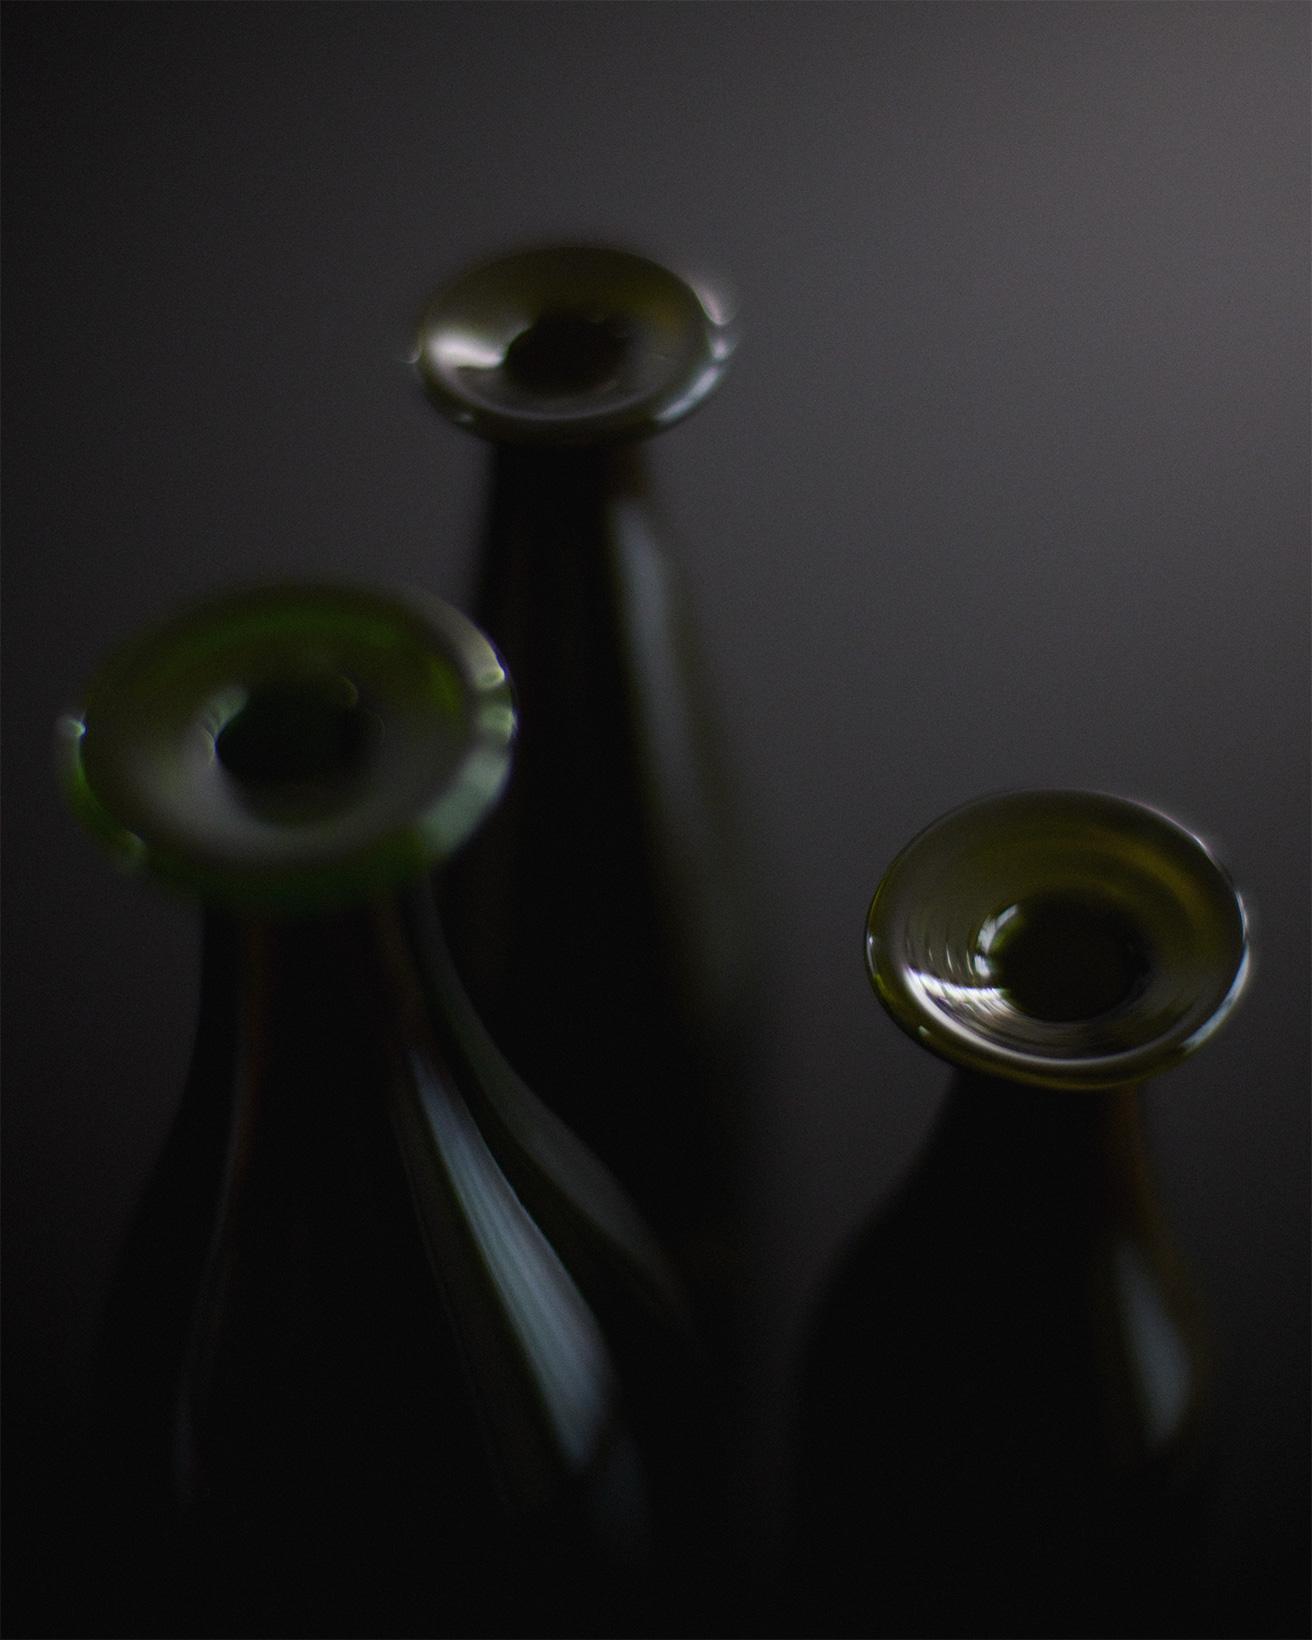 何気なく目にするワインボトルは、特別にデザインされたものではないが時代を経ても残ってきたかたち。ジャスパー・モリソンらしい着眼点によって誕生したフラワーボトルのネック部分は、イタリアのガラス職人がつけている。〈カッペリーニ〉の《スリー グリーン ボトルズ》H34.5×φ11.4cm、H30×φ7.5cm、H26.5×φ8.2cm 3点セット 48,400円（カッペリーニ ポイント トウキョウ TEL 03 6821 8890）